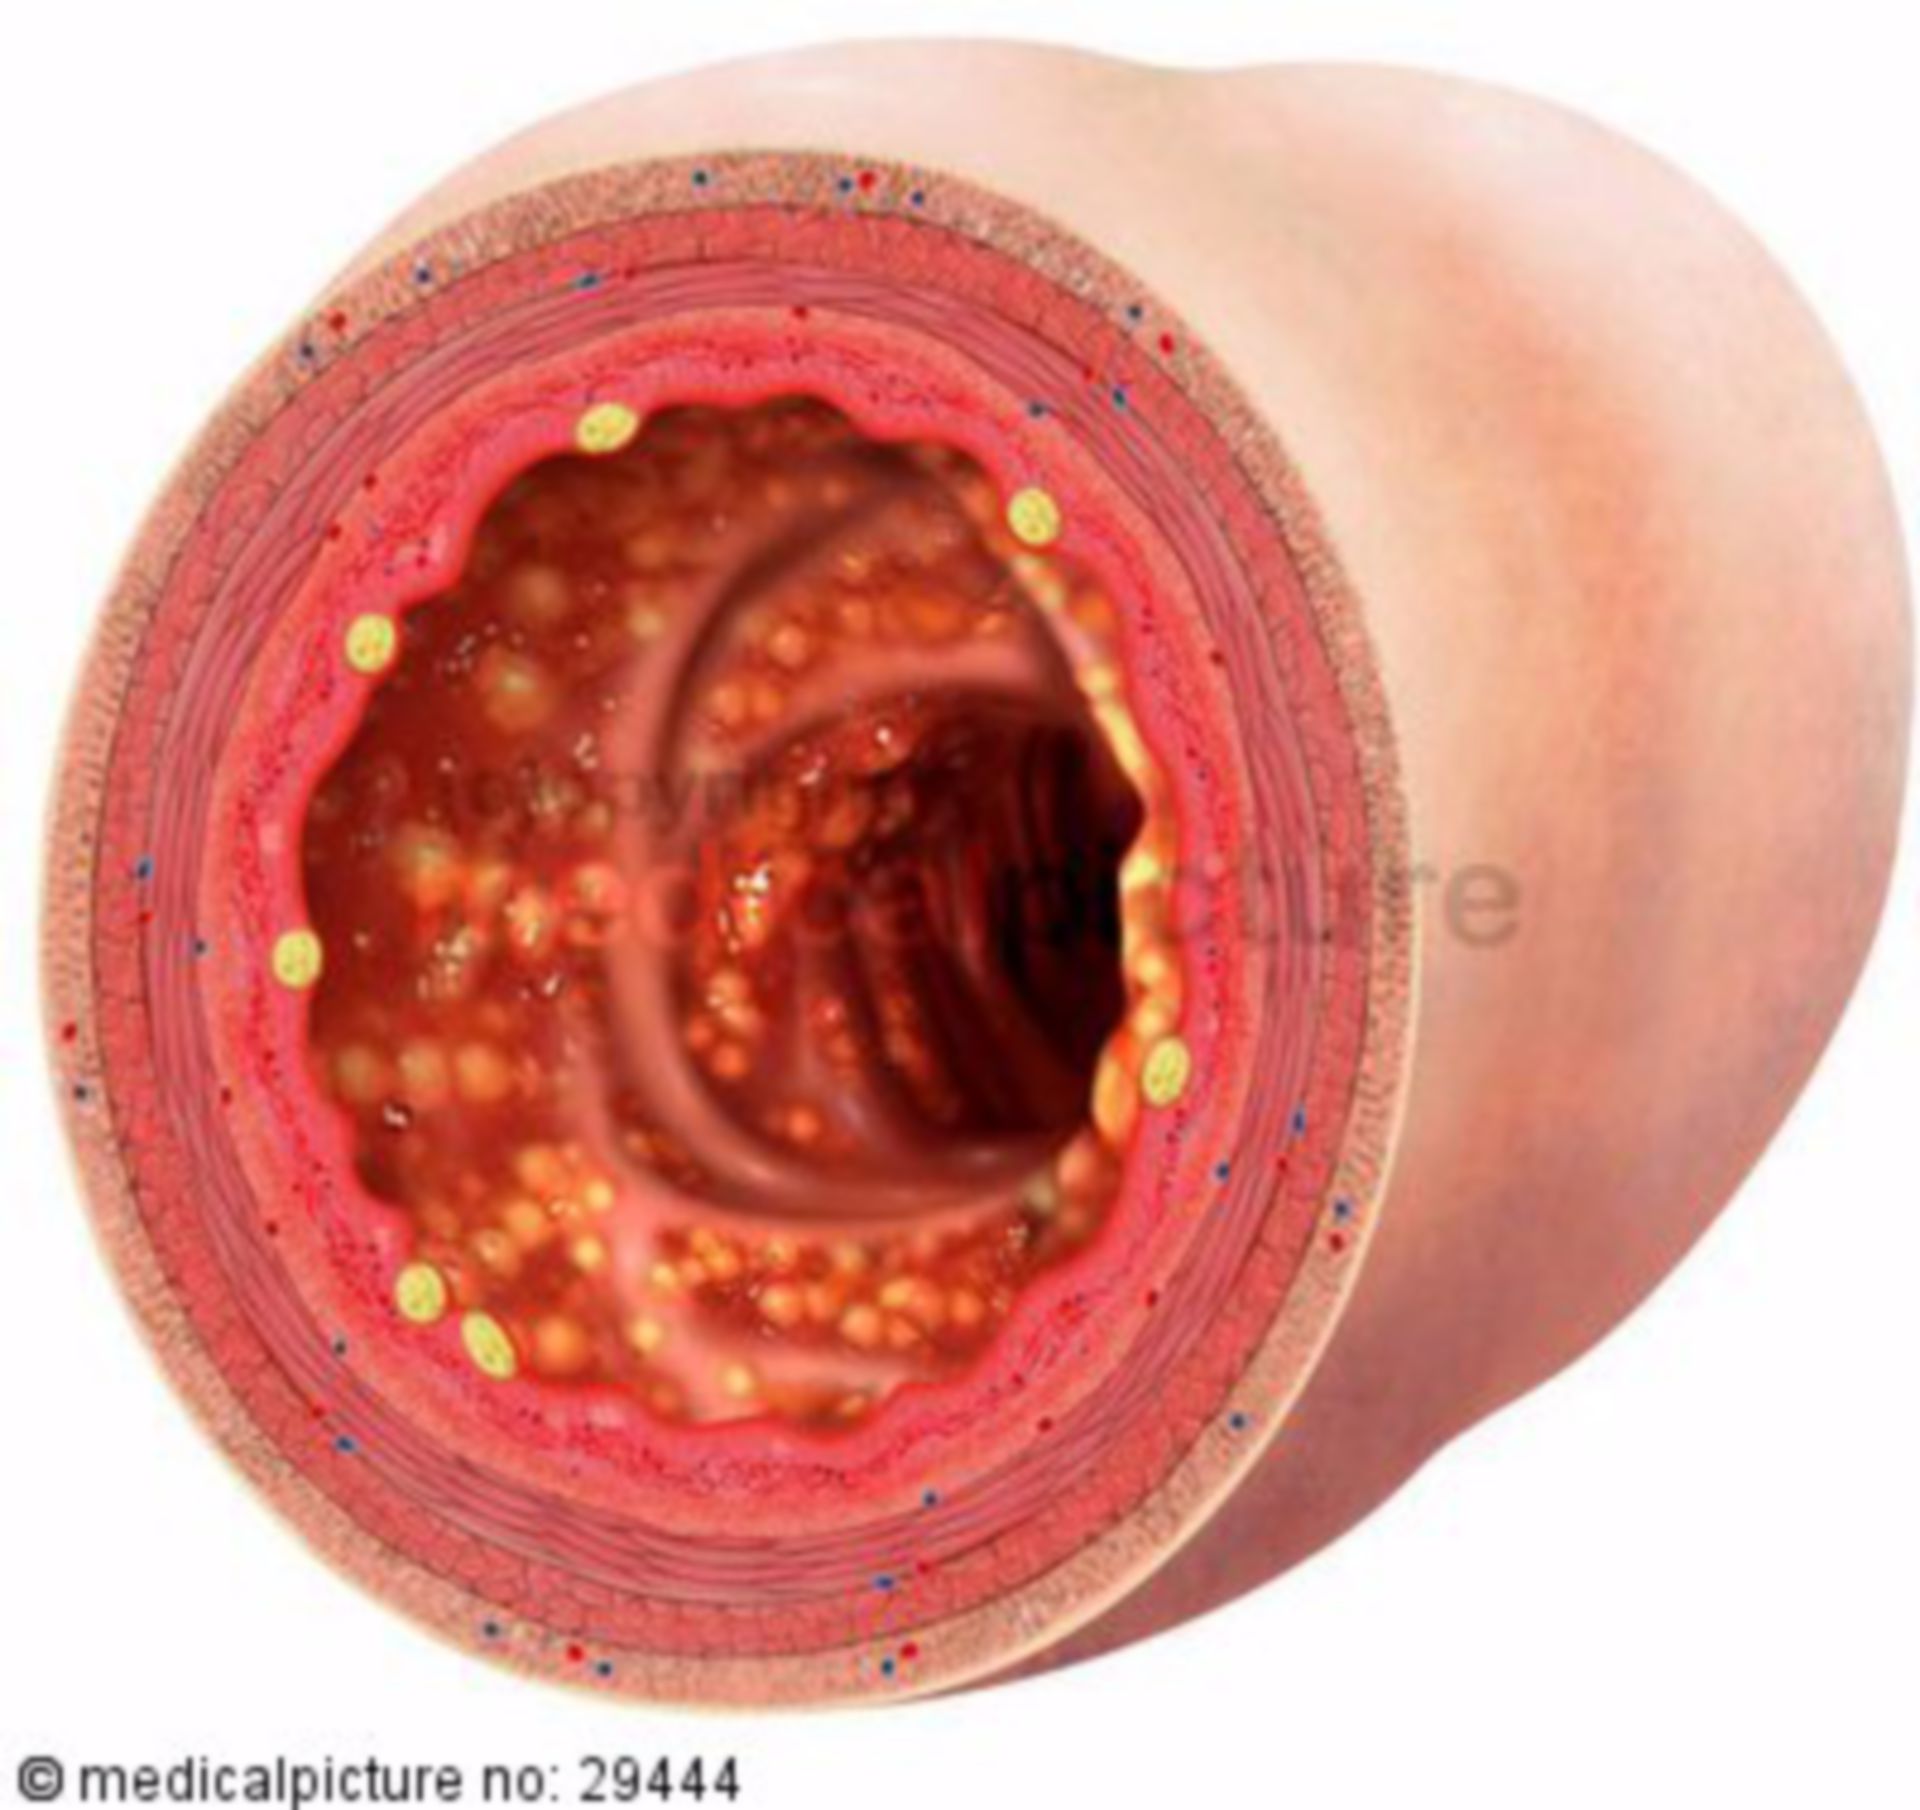 Lumen eines Dickdarms mit Colitis ulcerosa